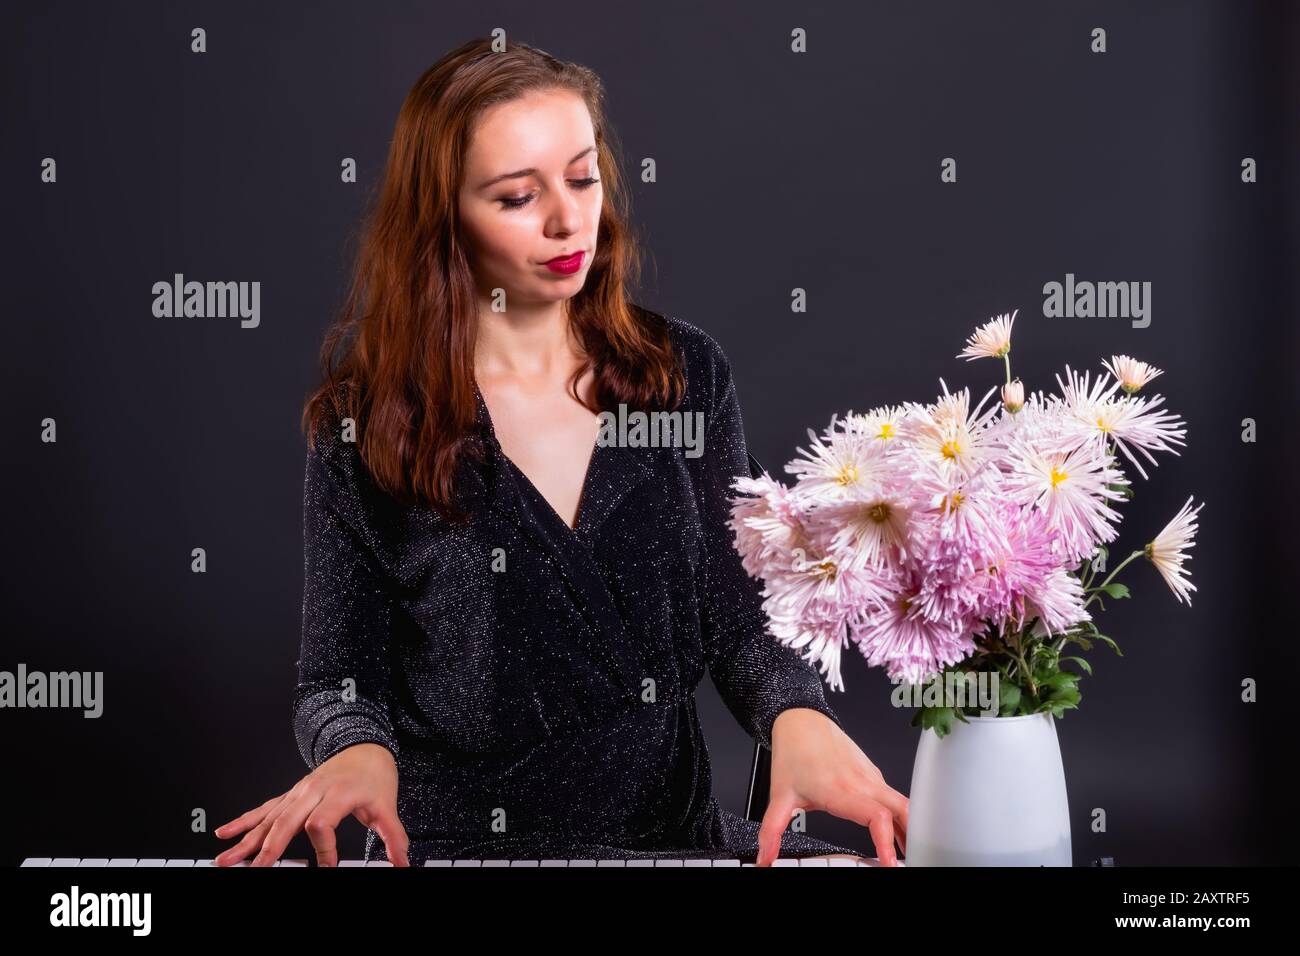 Inspiriert von Herbstblumen, komponiert eine Frau Musik auf einem elektronischen Klavier Stockfoto